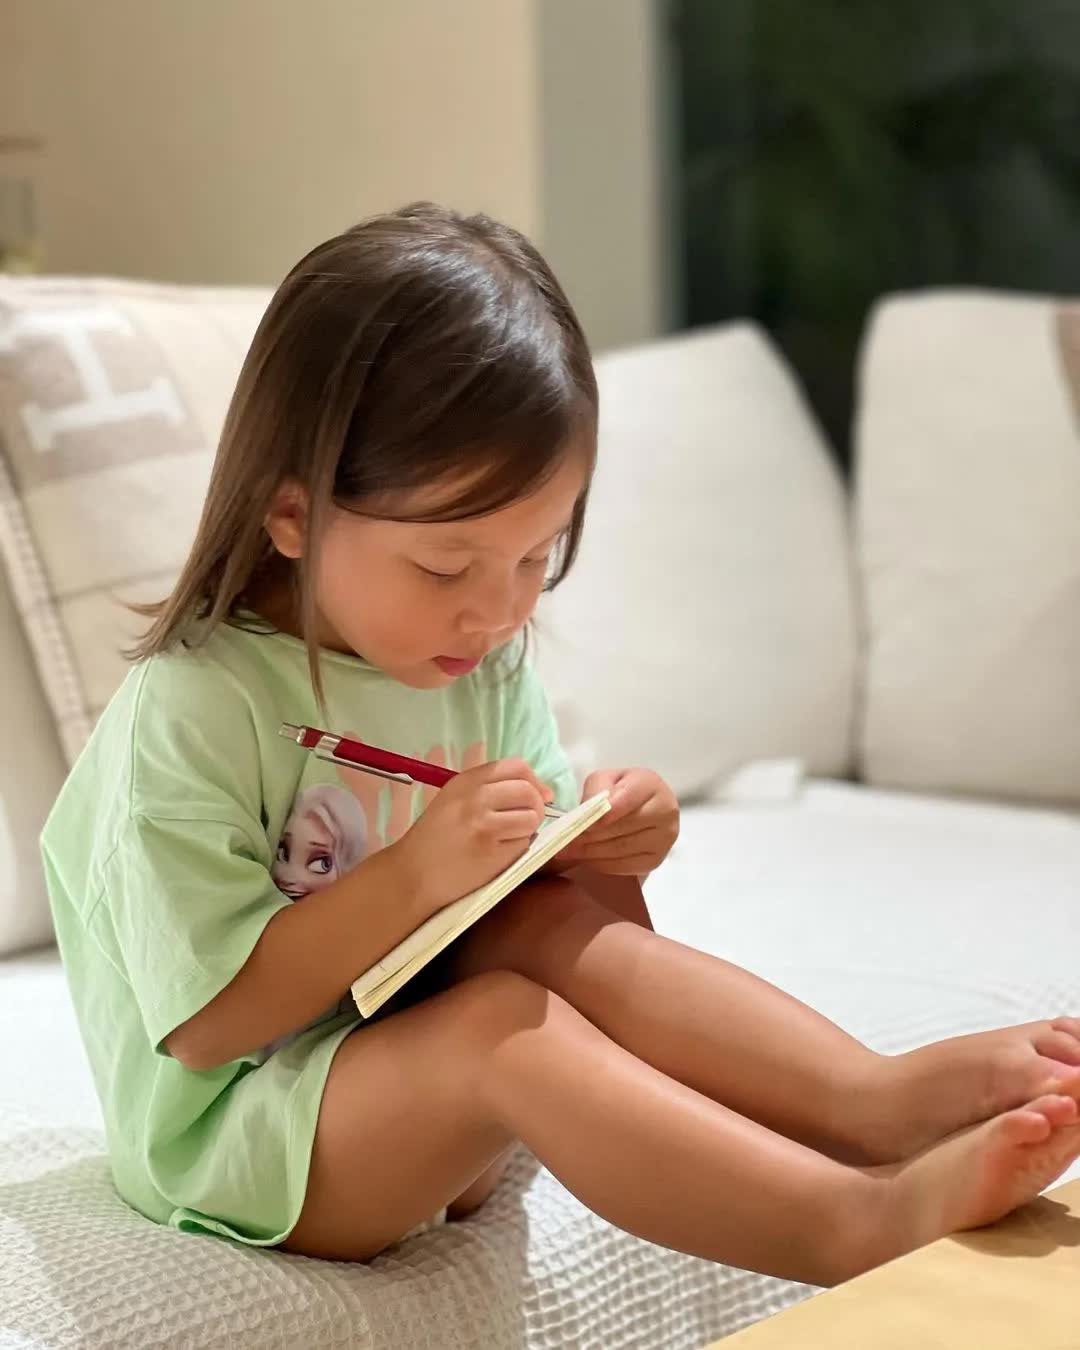 Lisa nhà Hà Hồ mới 2 tuổi đã tập viết, nhìn thái độ và dáng vẻ tập trung mà ai cũng bất ngờ - Ảnh 2.